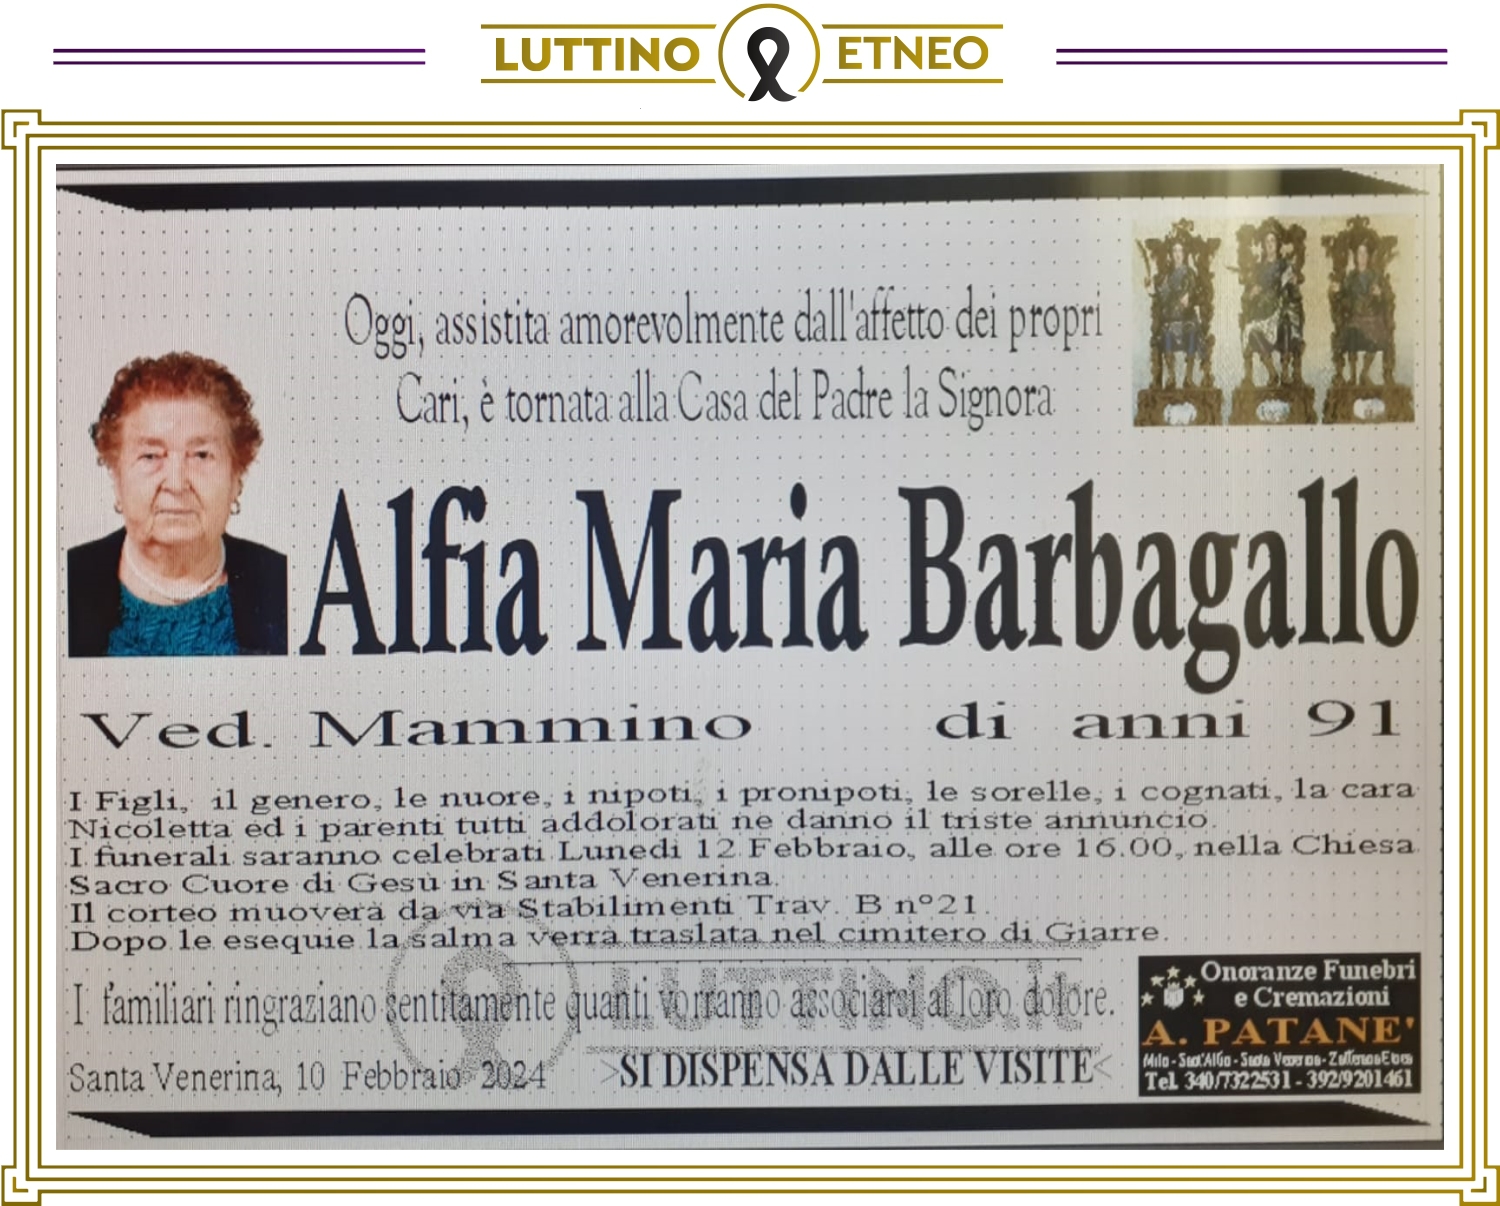 Alfia Maria Barbagallo